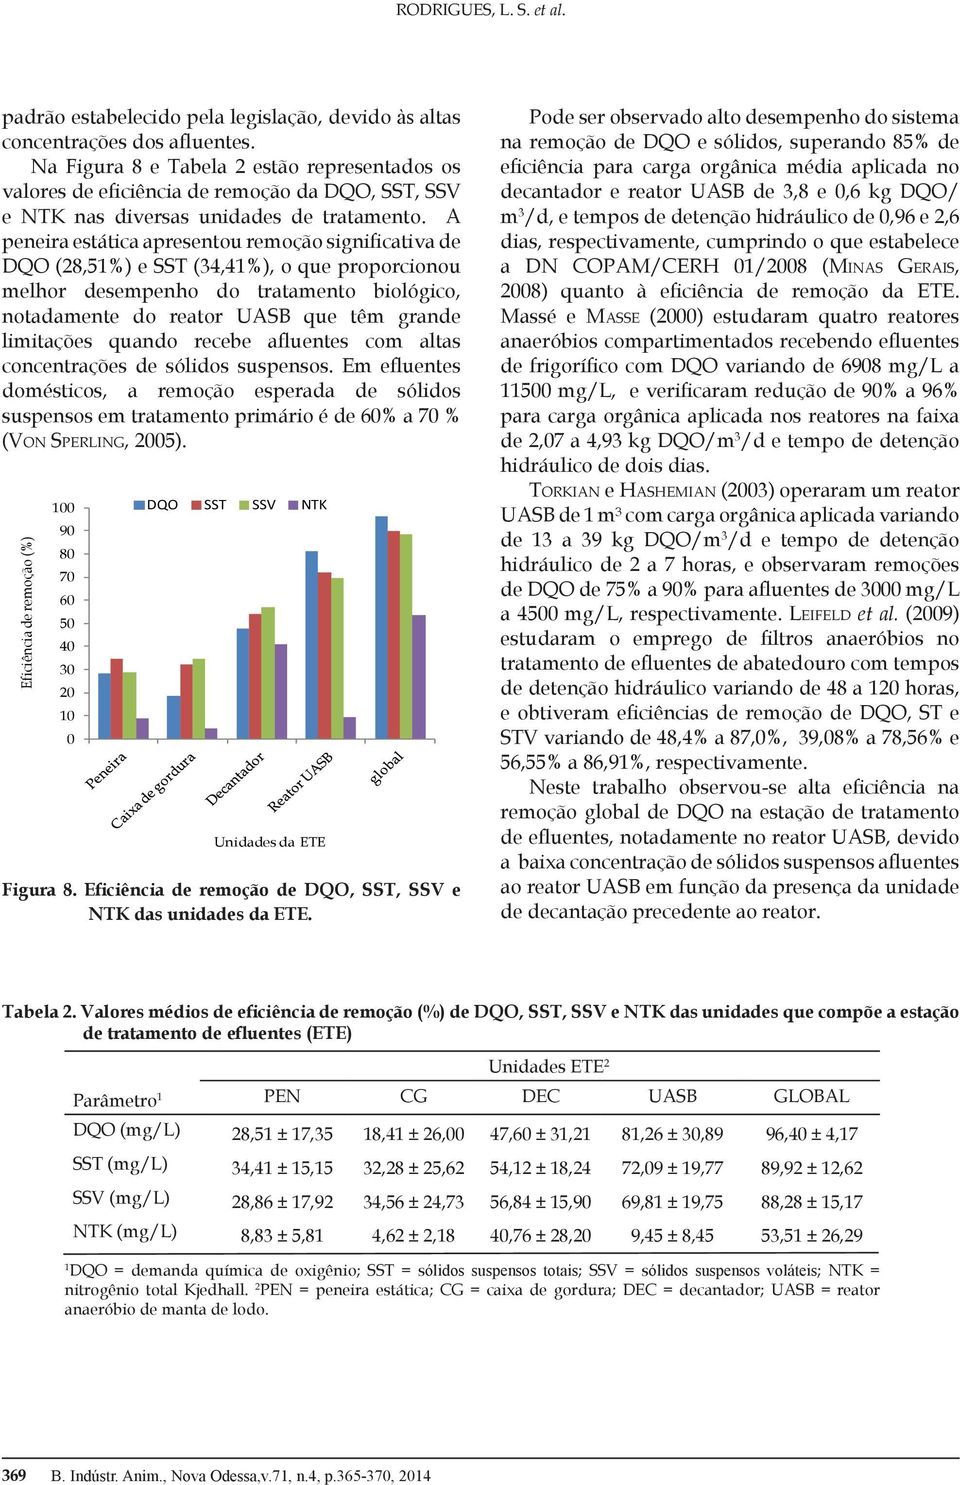 A peneira estática apresentou remoção significativa de DQO (28,51%) e SST (34,41%), o que proporcionou melhor desempenho do tratamento biológico, notadamente do reator UASB que têm grande limitações